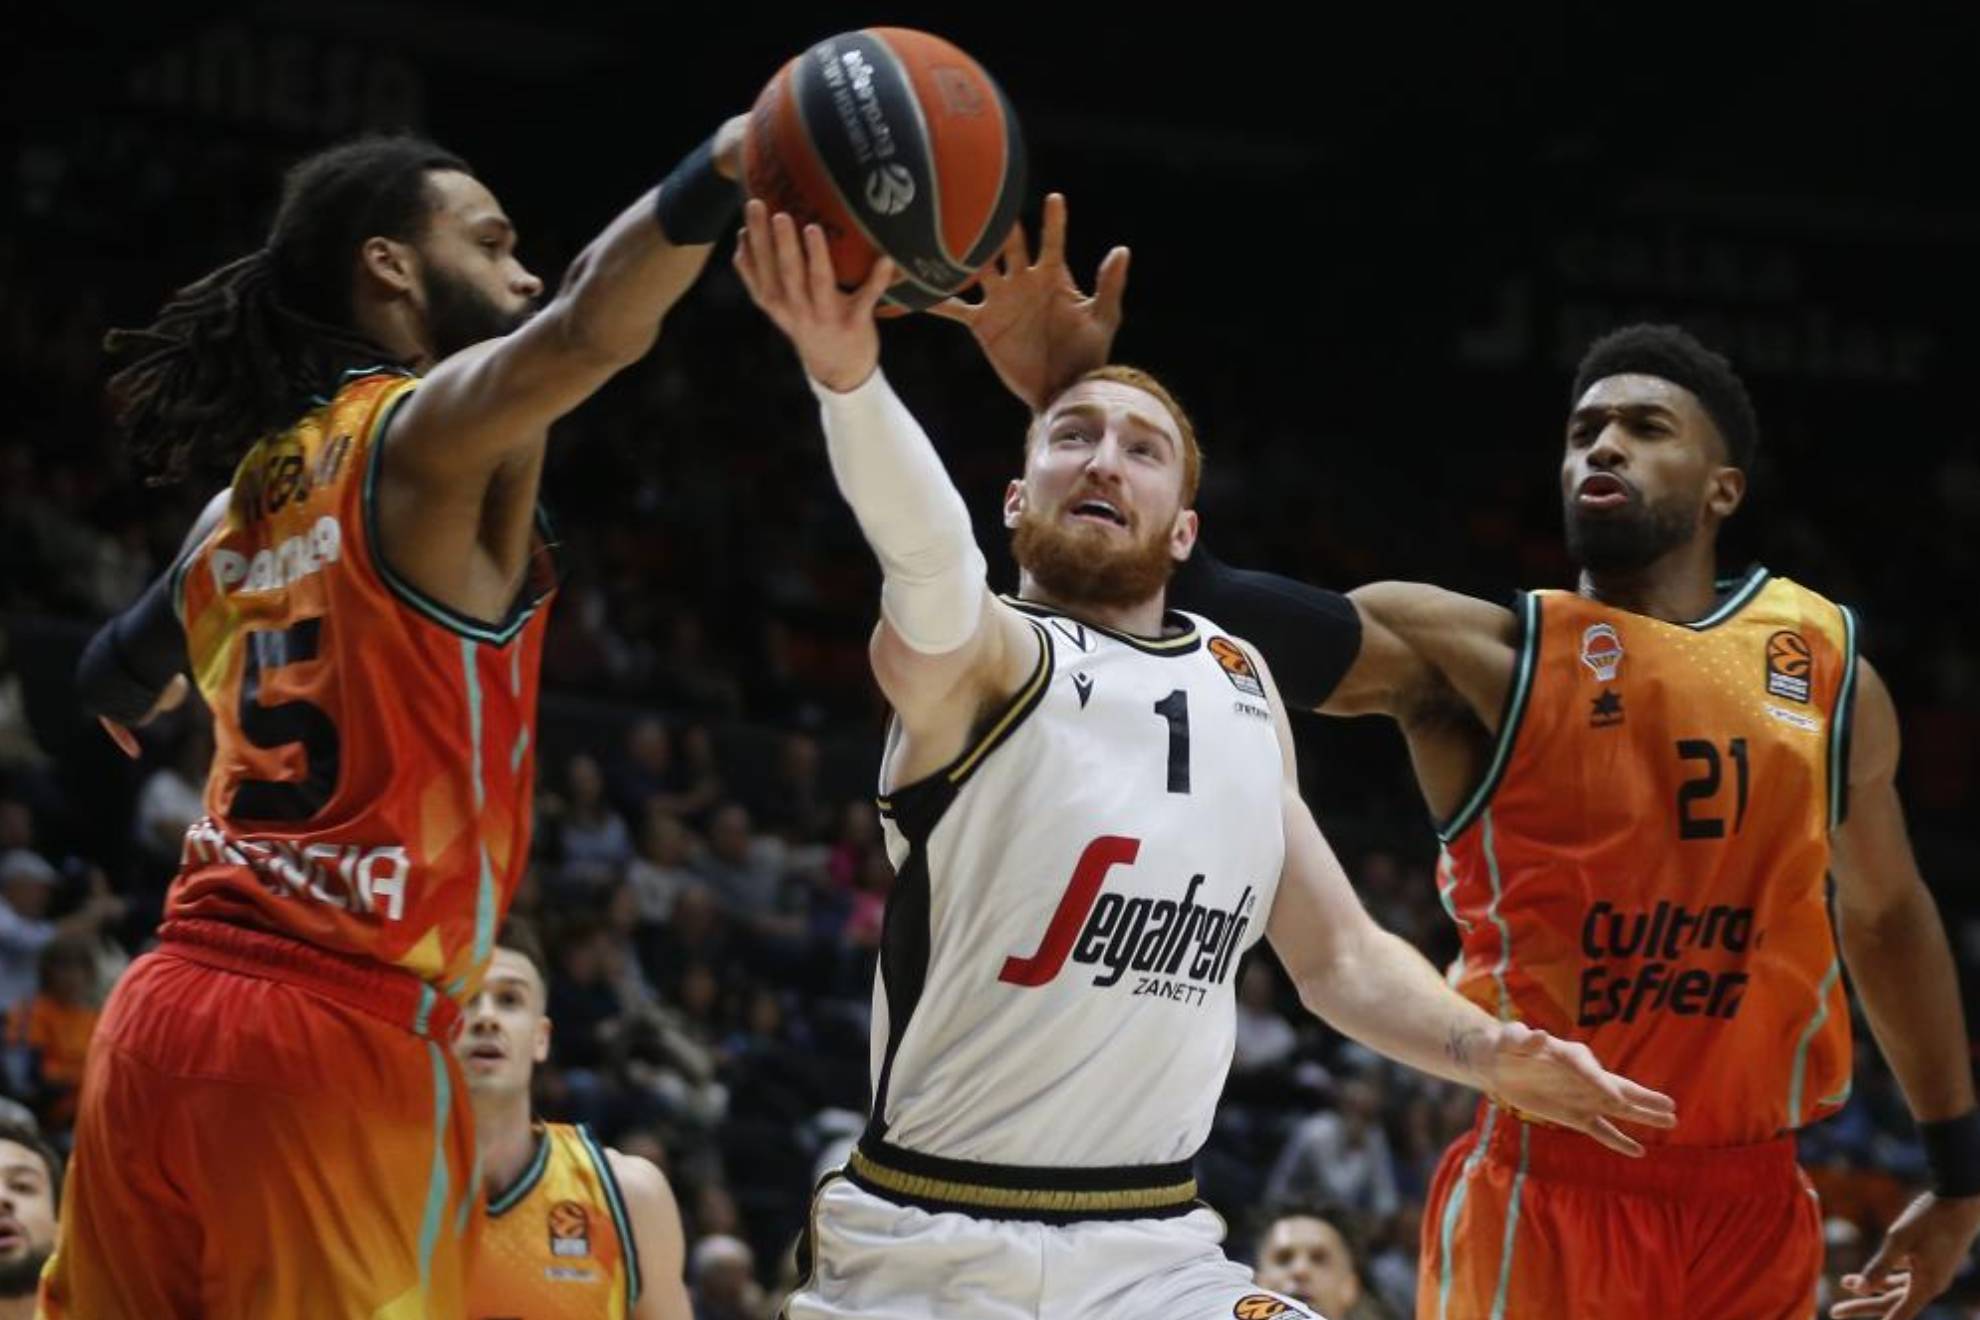 grosor Perfecto Profesión Valencia Basket - Últimas noticias en Marca.com